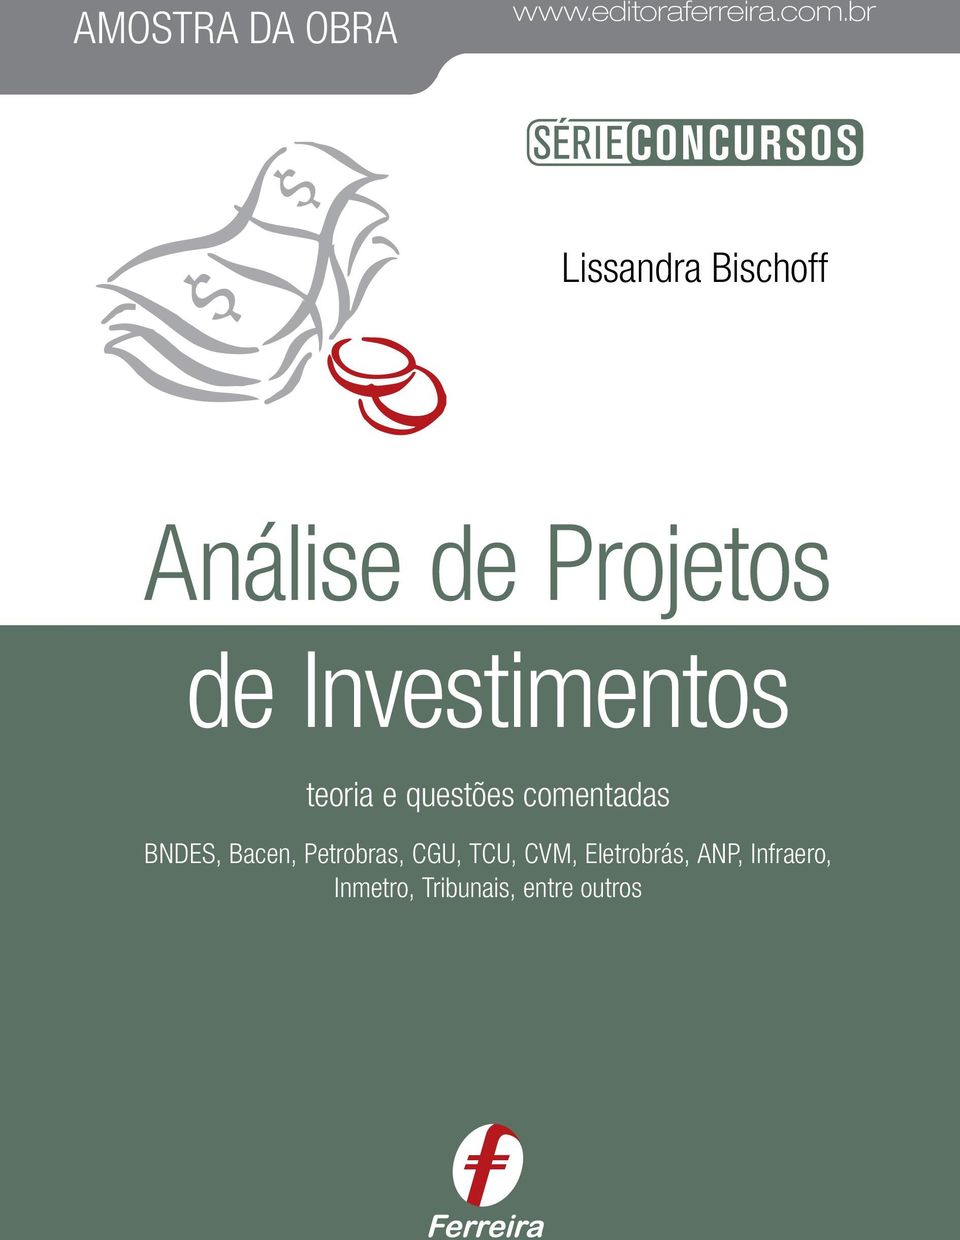 Investimentos teoria e questões comentadas BNDES, Bacen,